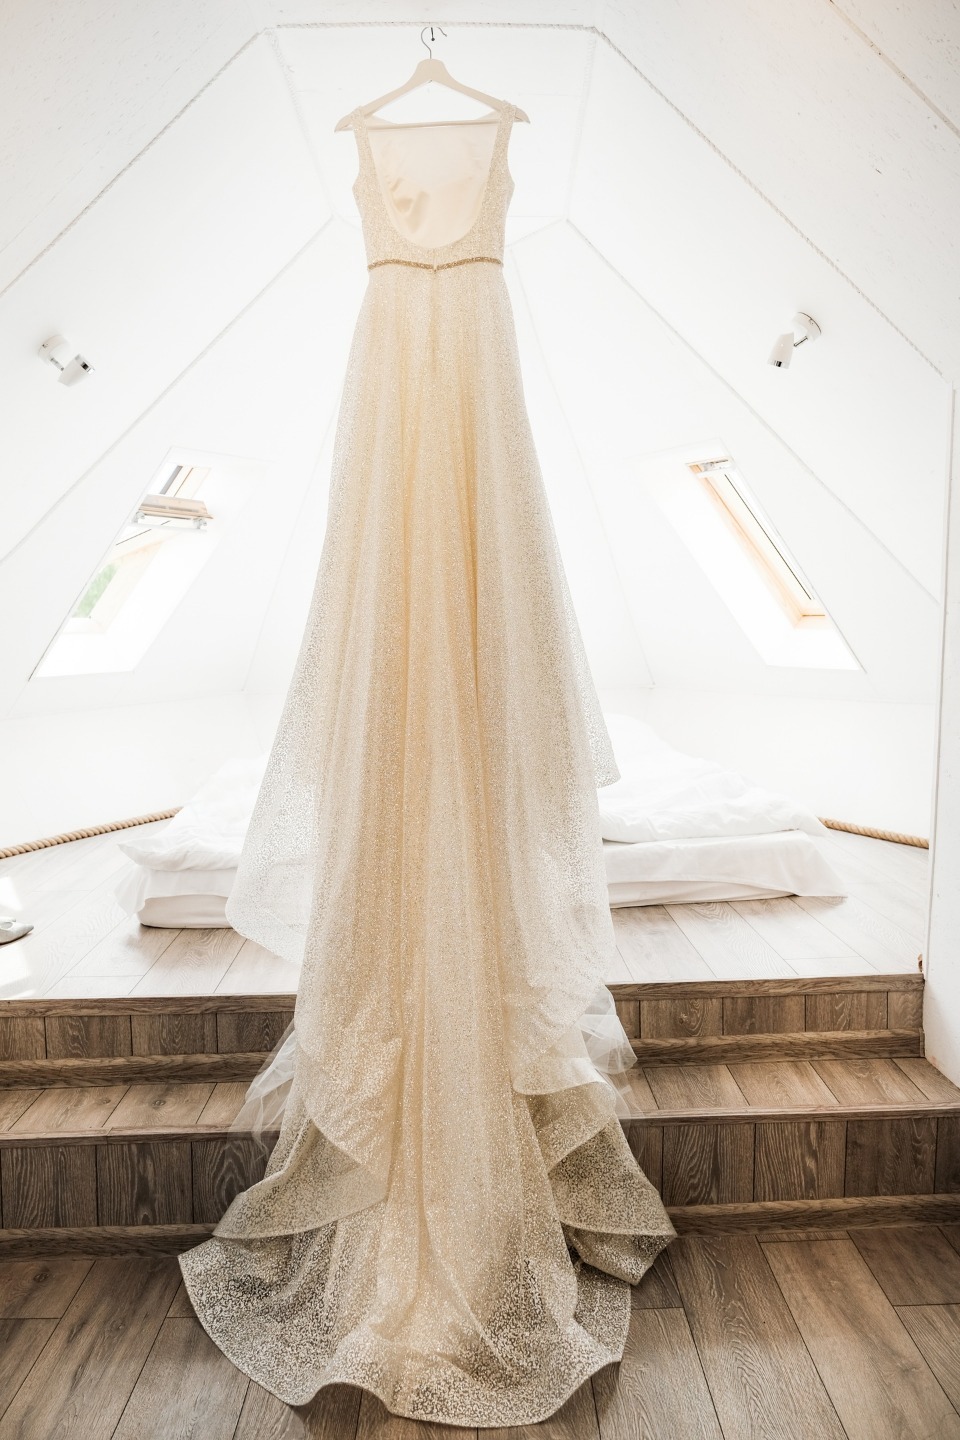 ФОТО ИЗ СТАТЬИ: Loft Manhatten: домашняя свадьба в стиле рустик